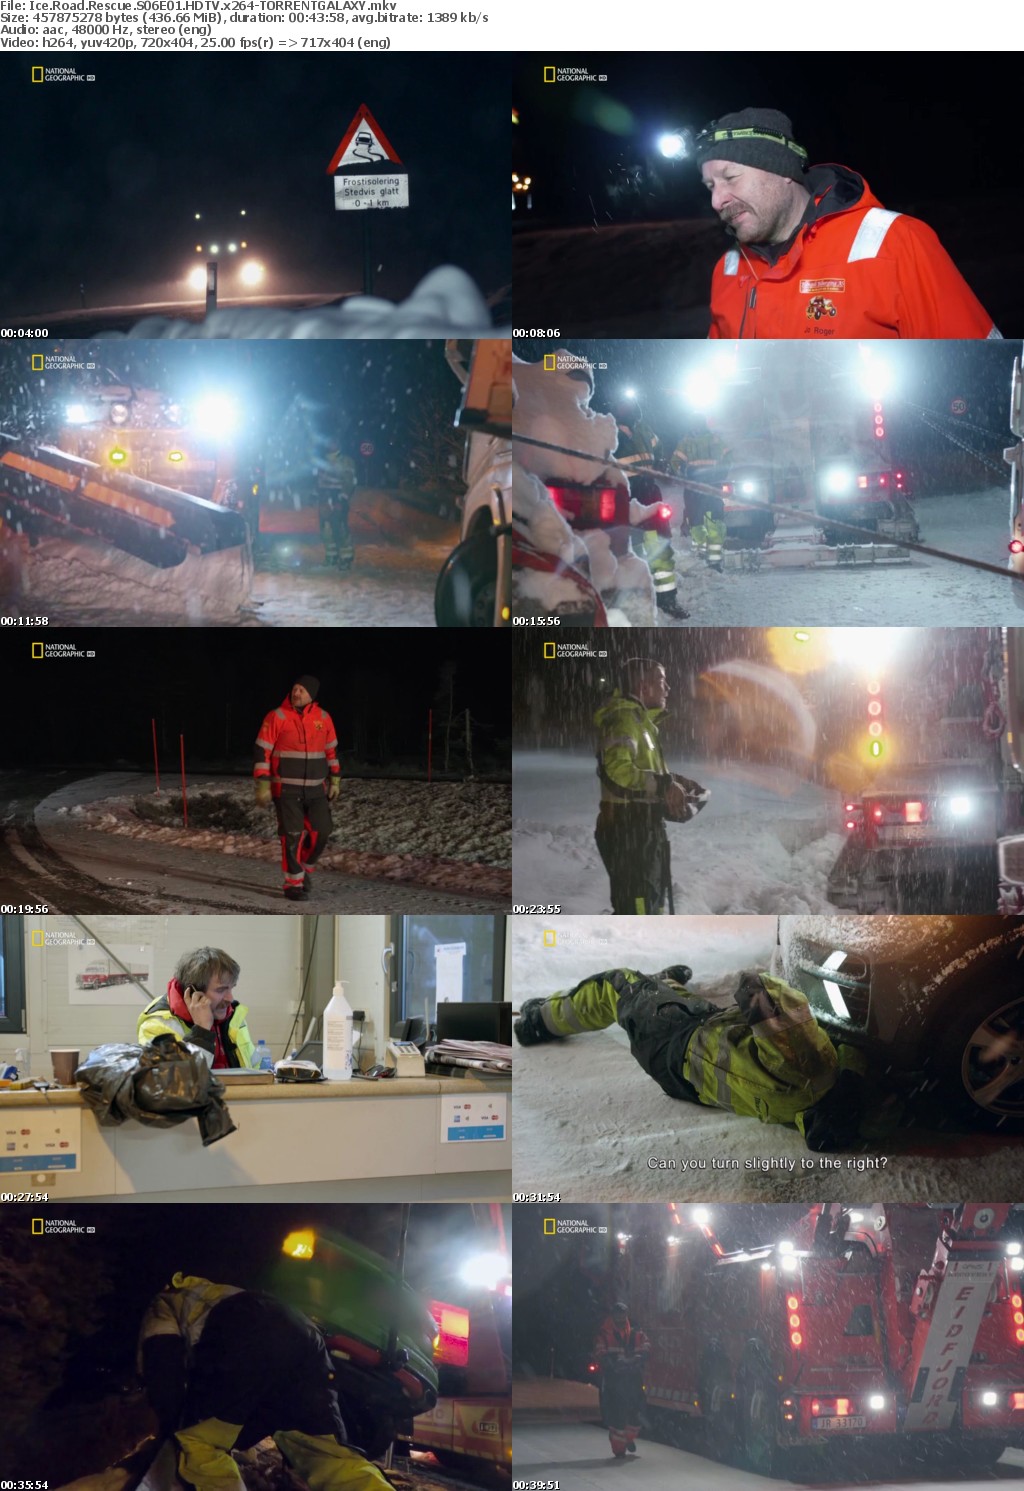 Ice Road Rescue S06E01 HDTV x264-GALAXY